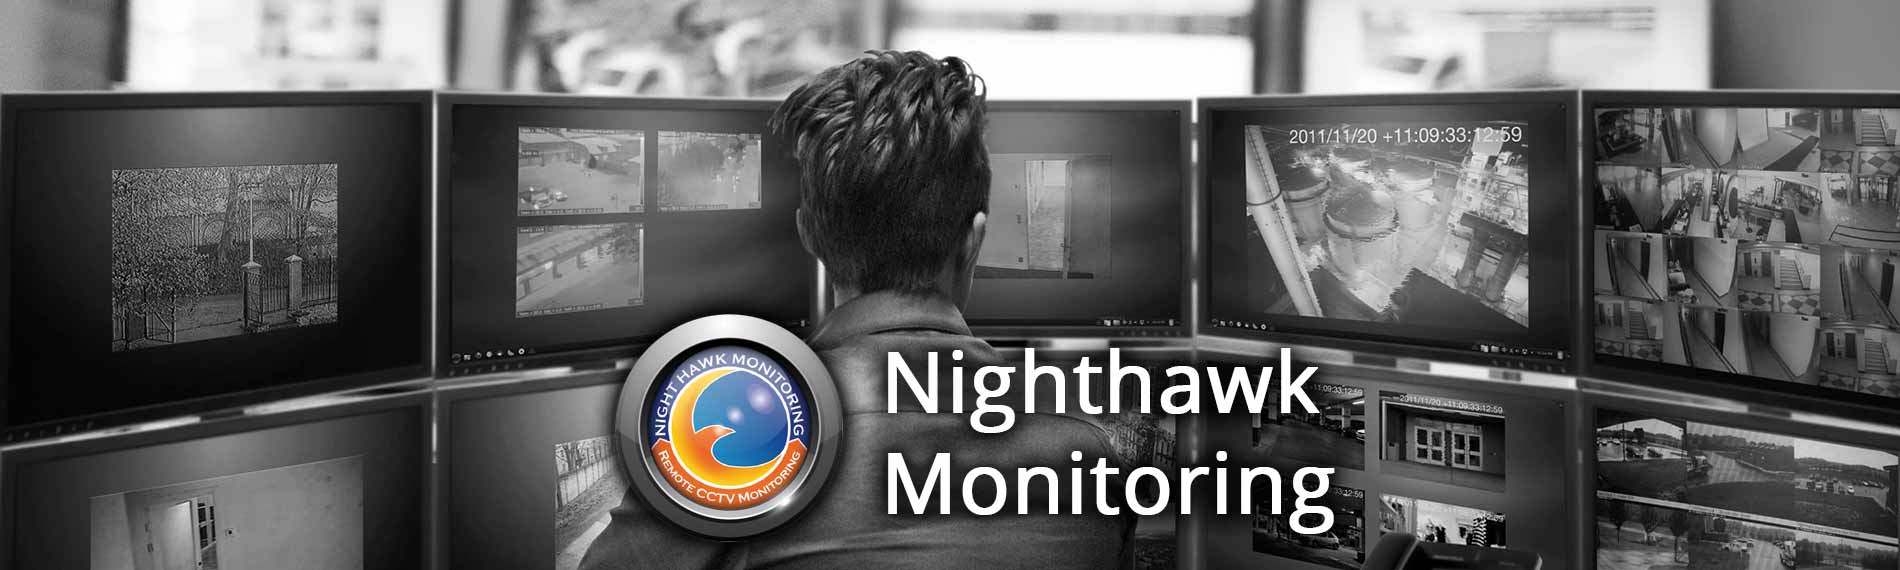 Remote Video Surveillance Santa Ana CA - Santa Ana Remote Video Surveillance Monitoring - Live Security Cameras Monitoring Santa Ana California